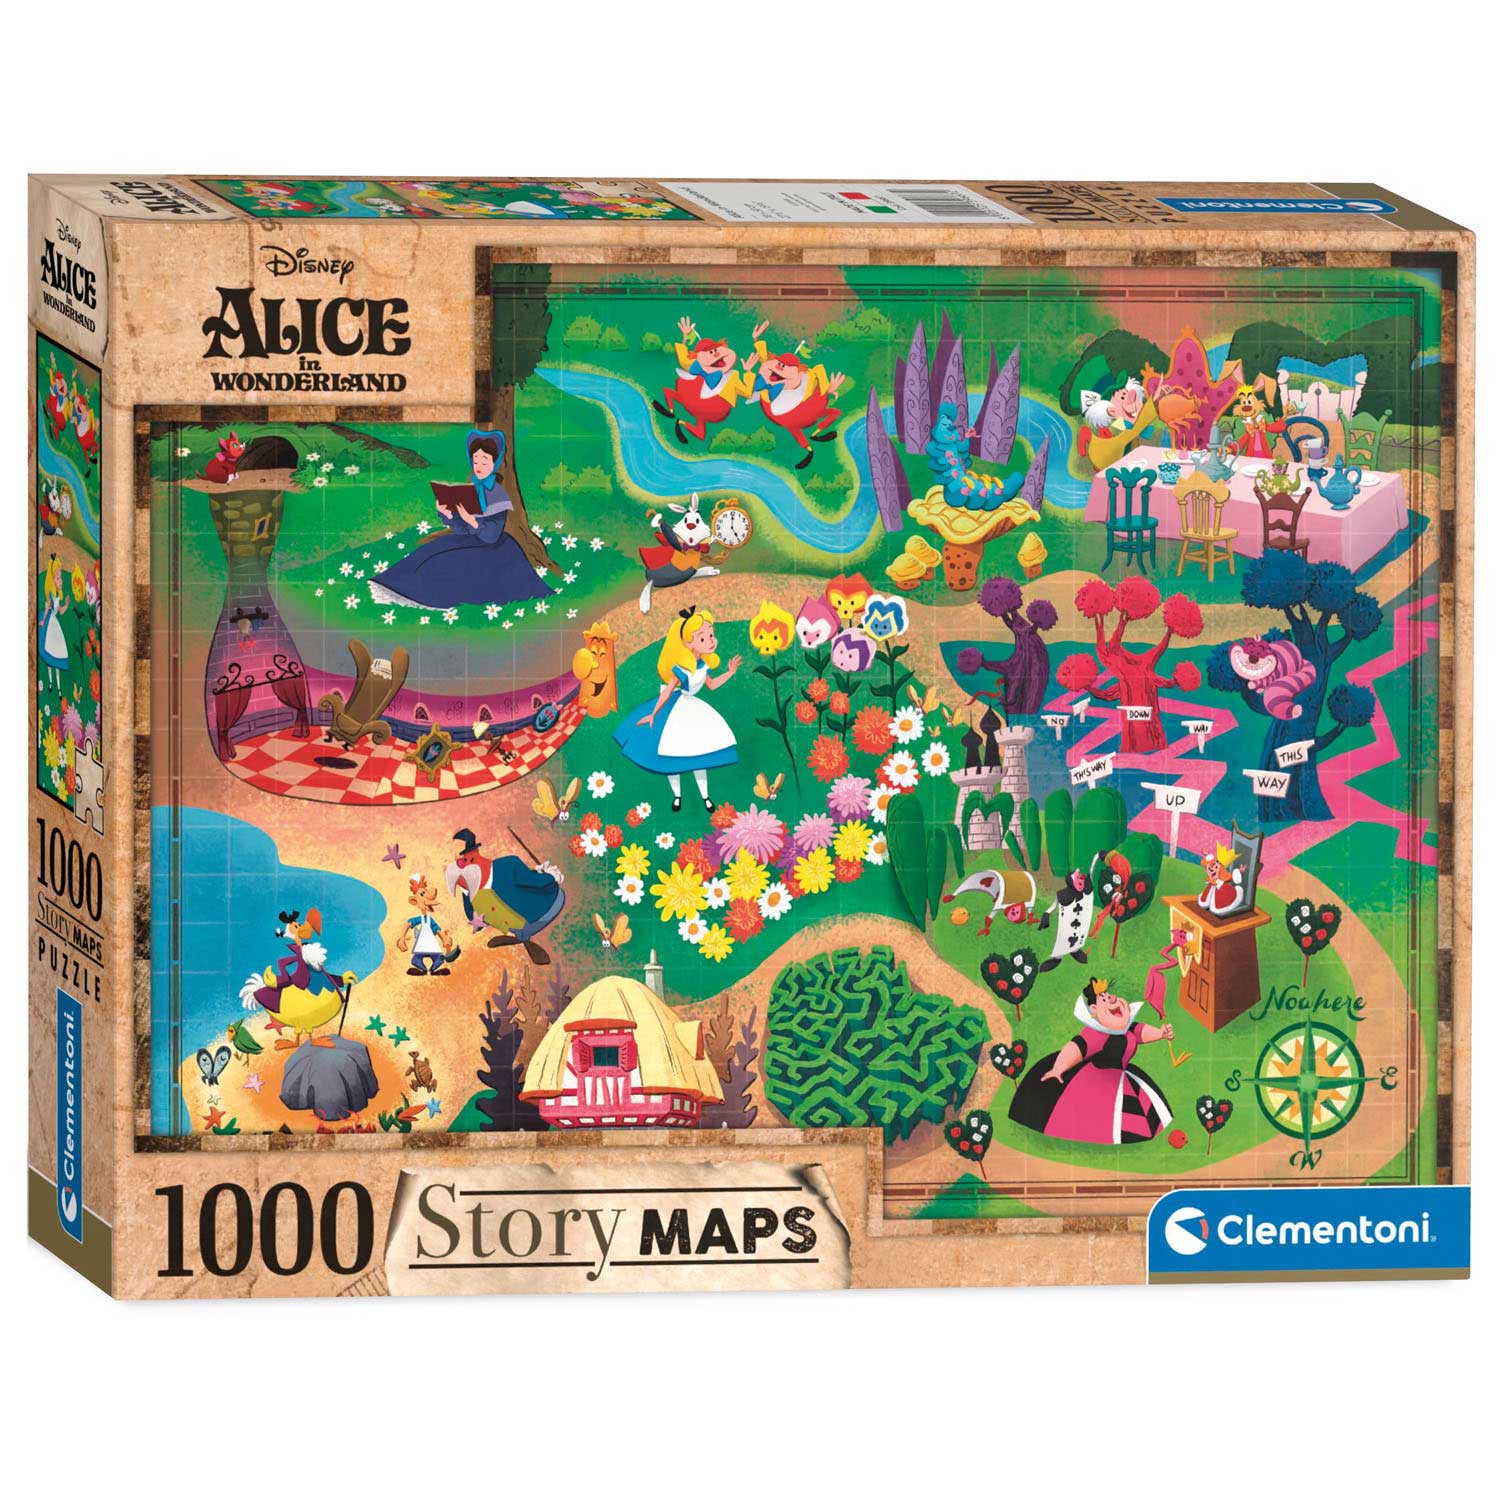 Clementoni Puzzle Carte du monde Alice au pays des merveilles, 1000 pièces.